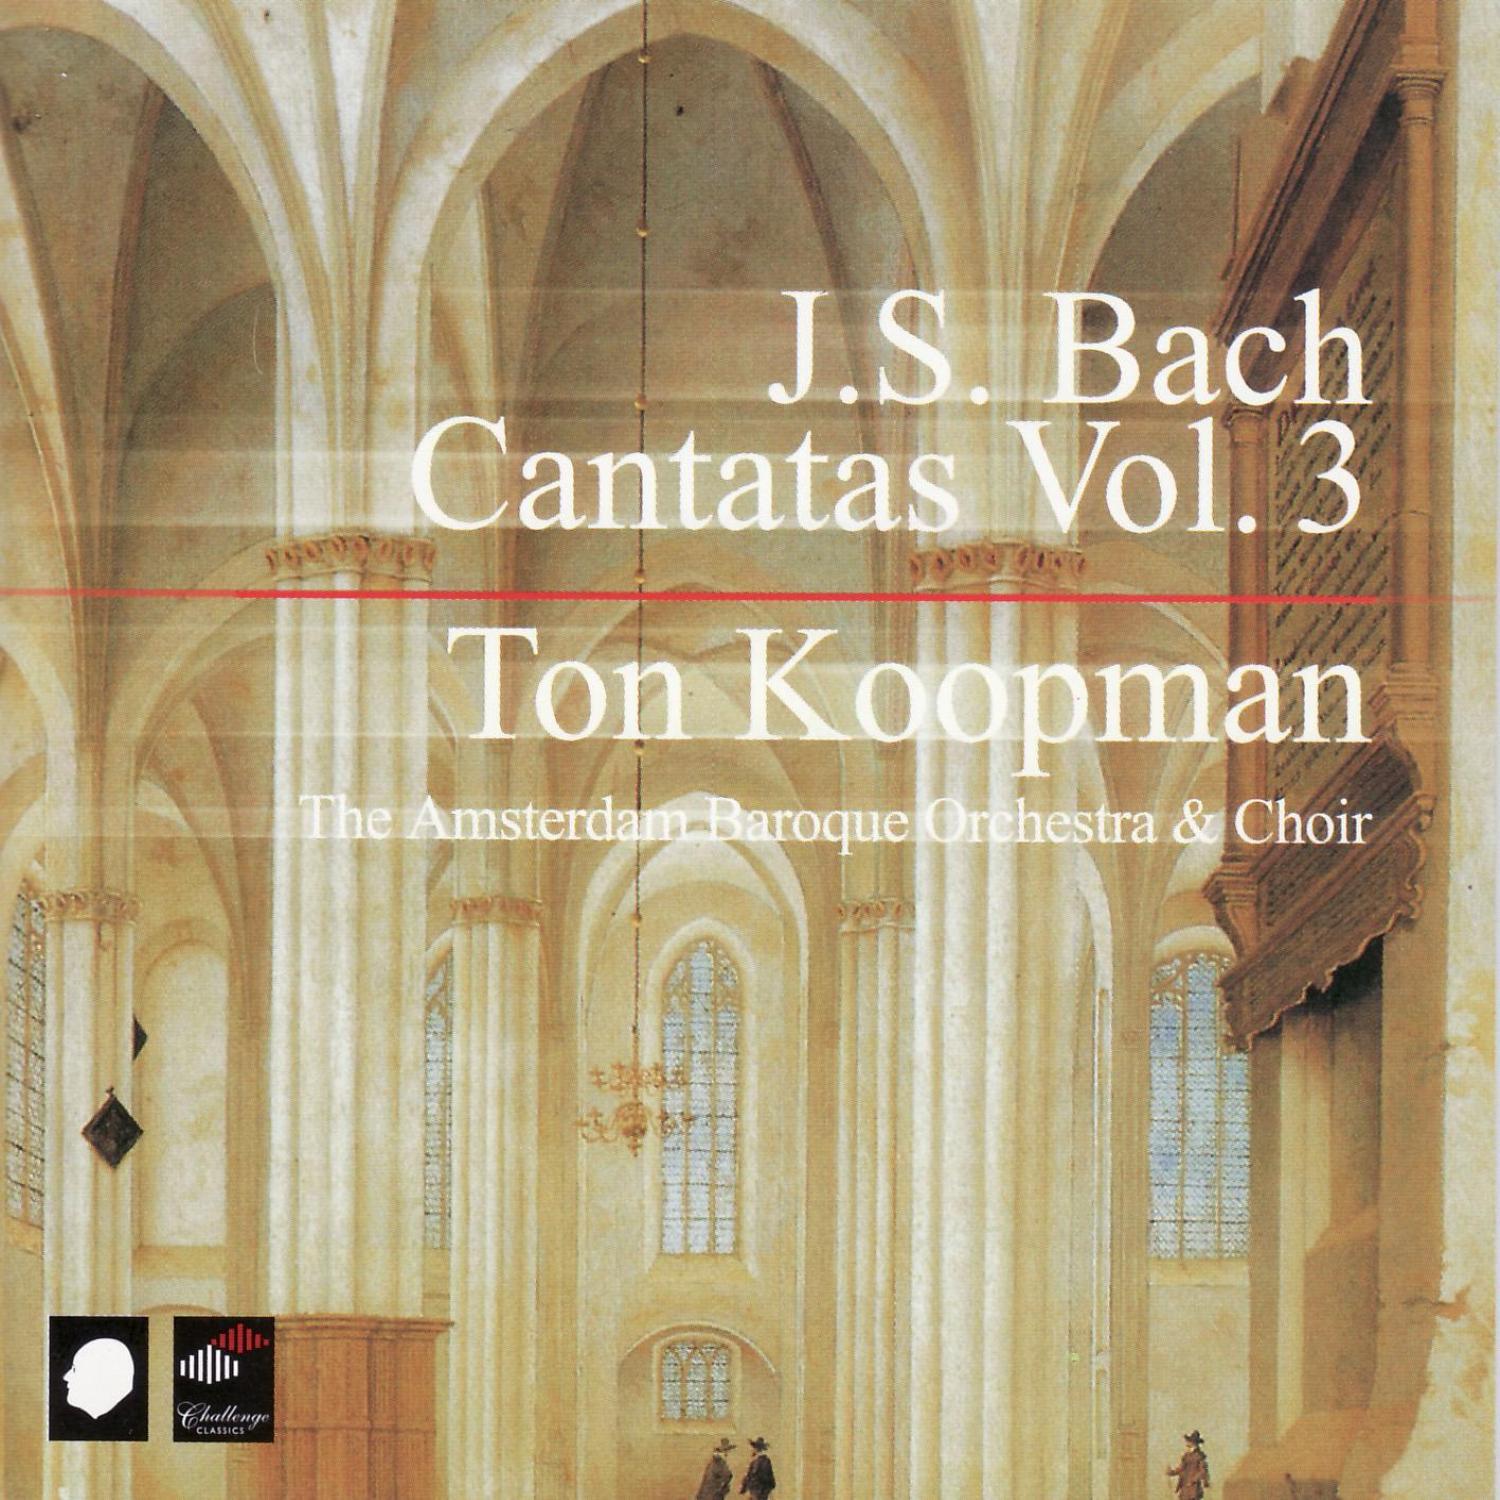 J.S. Bach: Cantatas Vol. 3